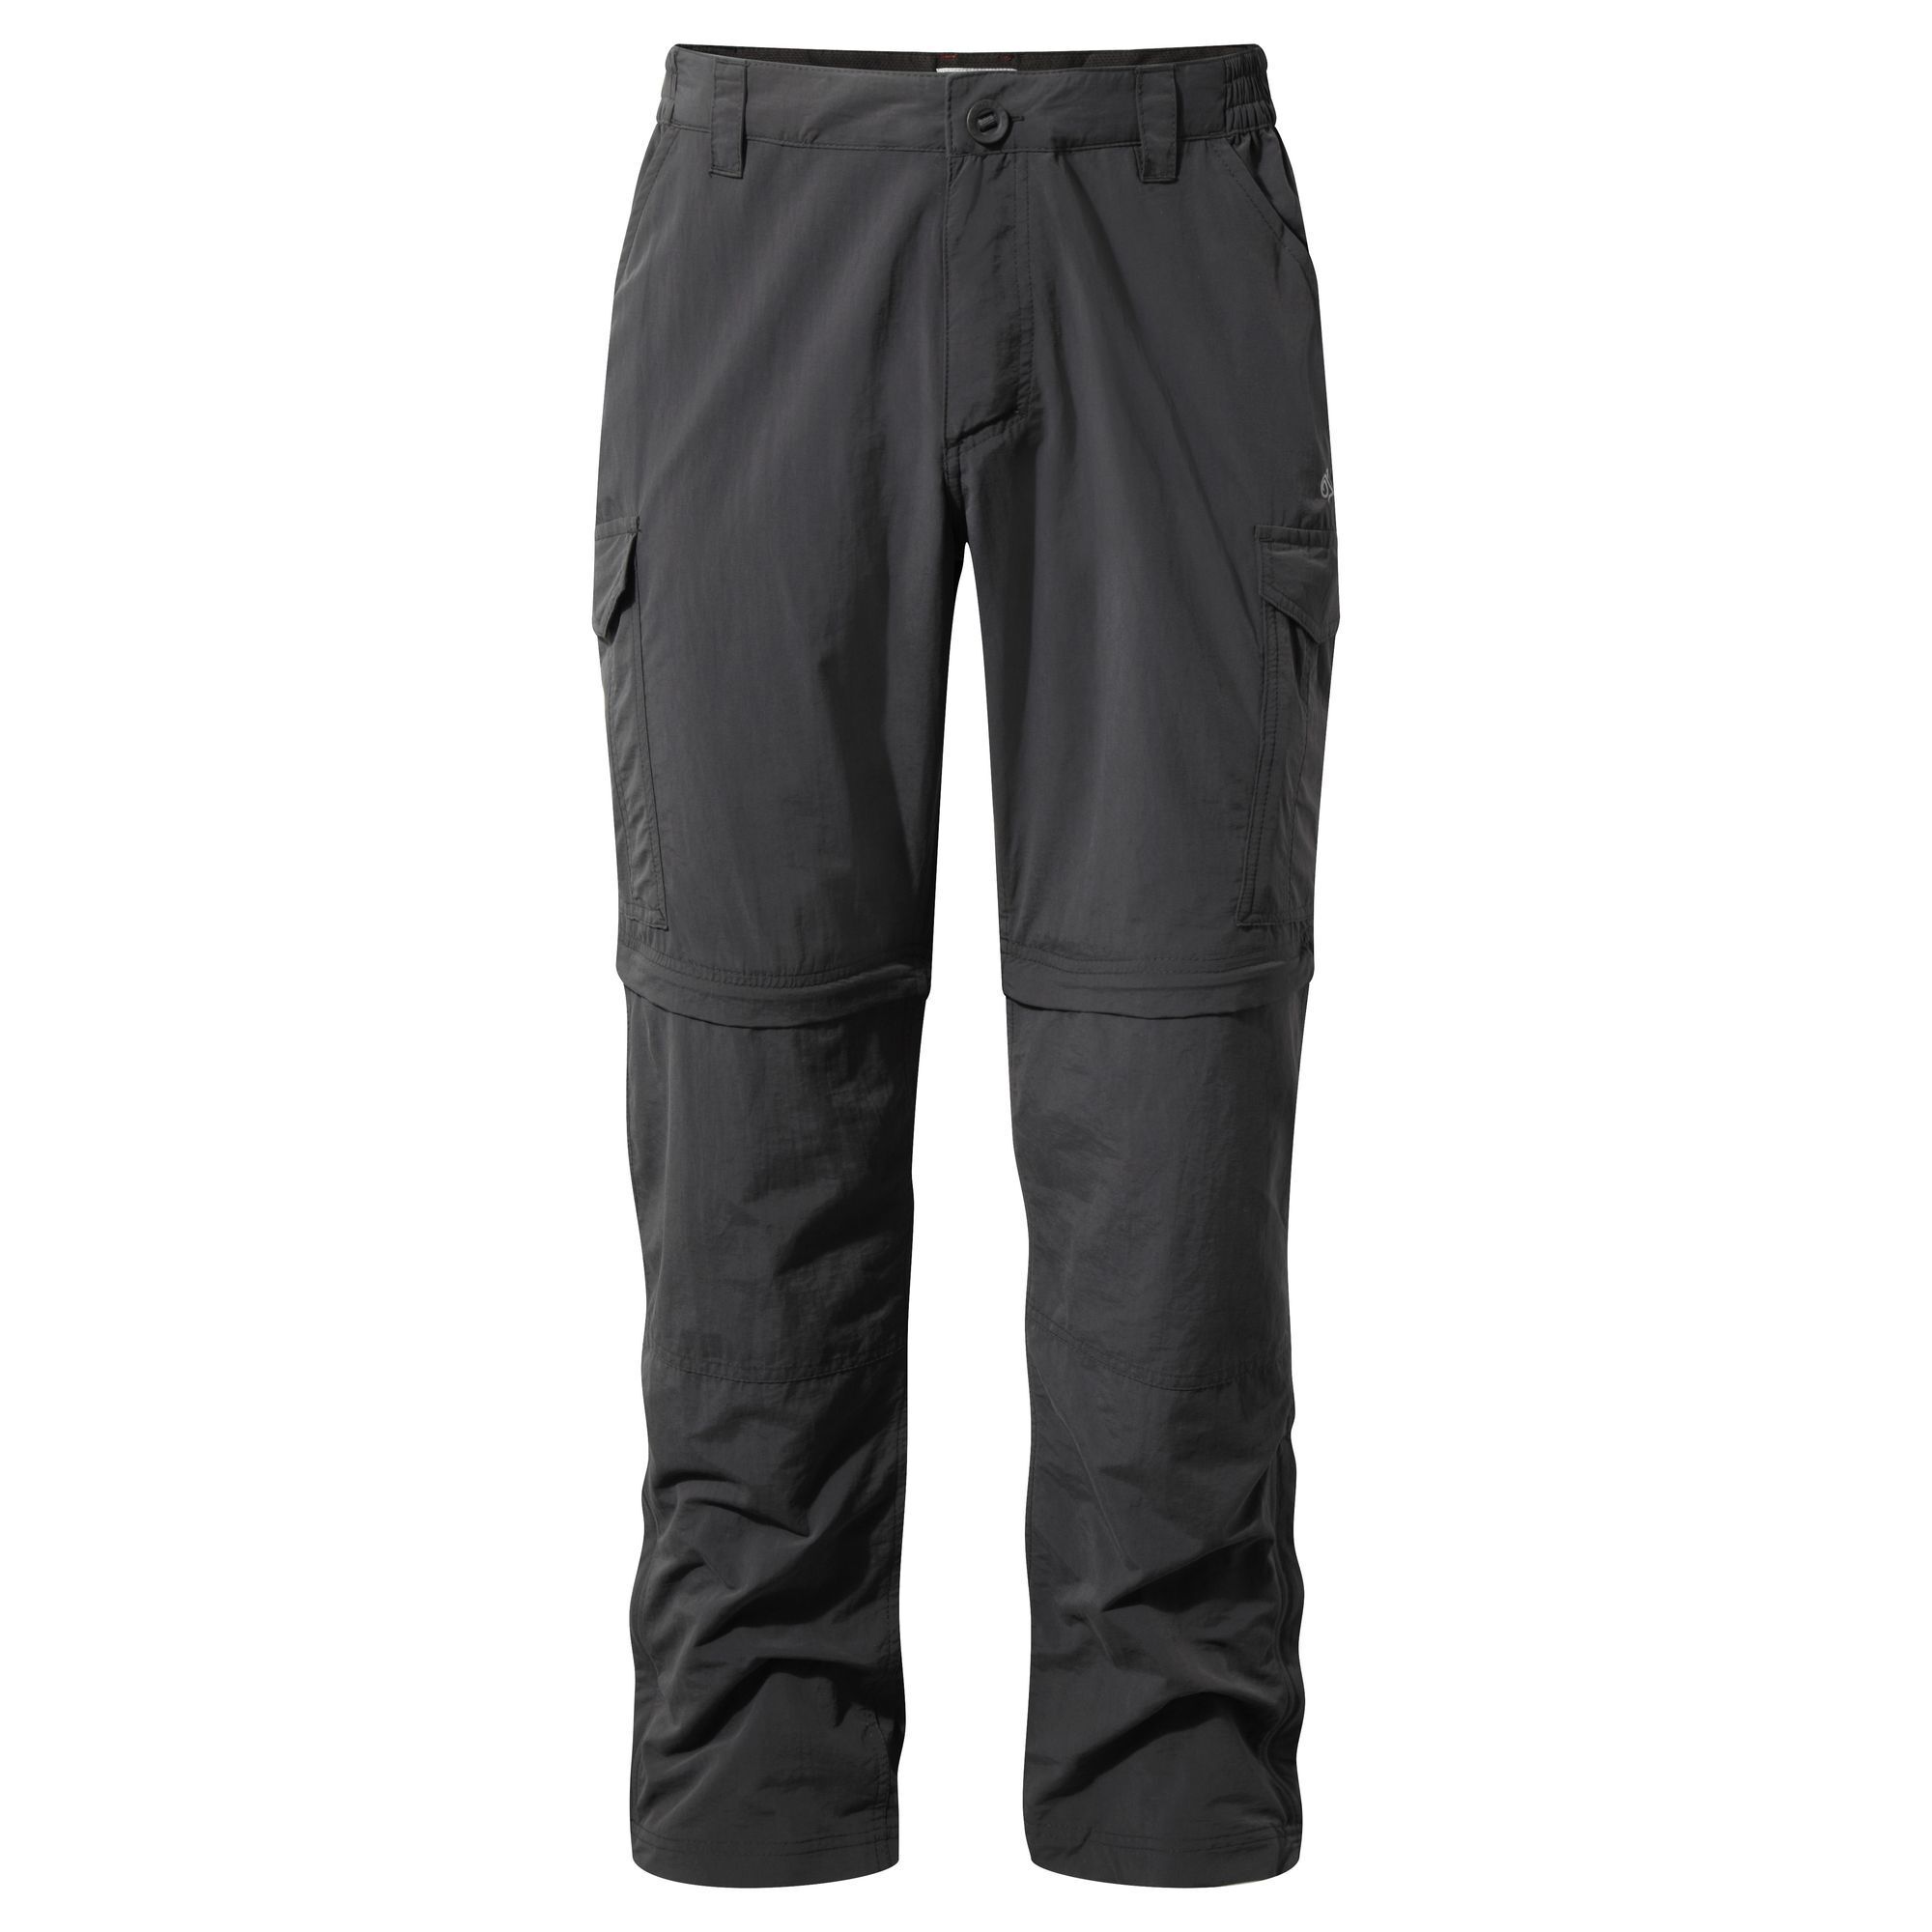 Craghoppers - Nosilife Convertible Trousers - Pantalón de trekking - Hombre